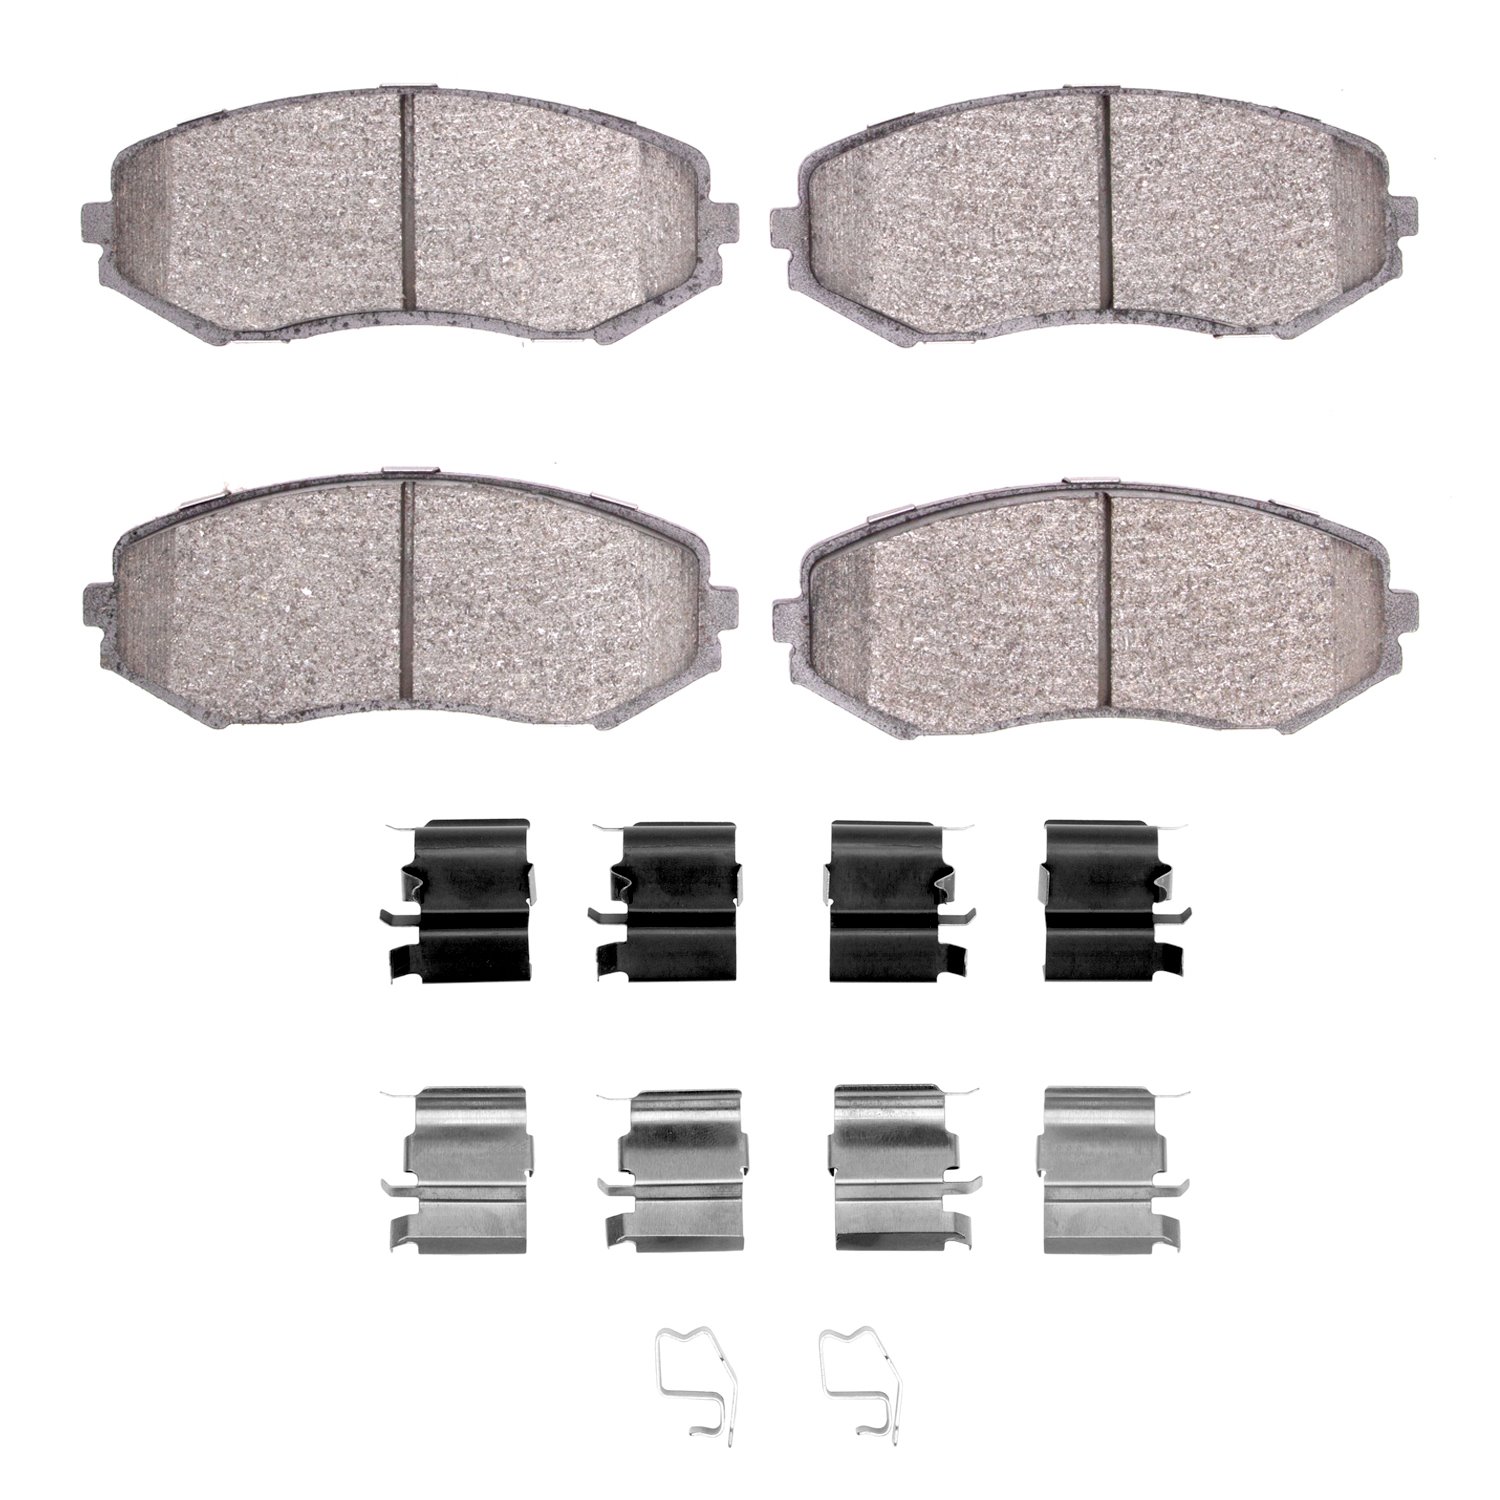 1310-1188-01 3000-Series Ceramic Brake Pads & Hardware Kit, 2006-2017 Suzuki, Position: Front